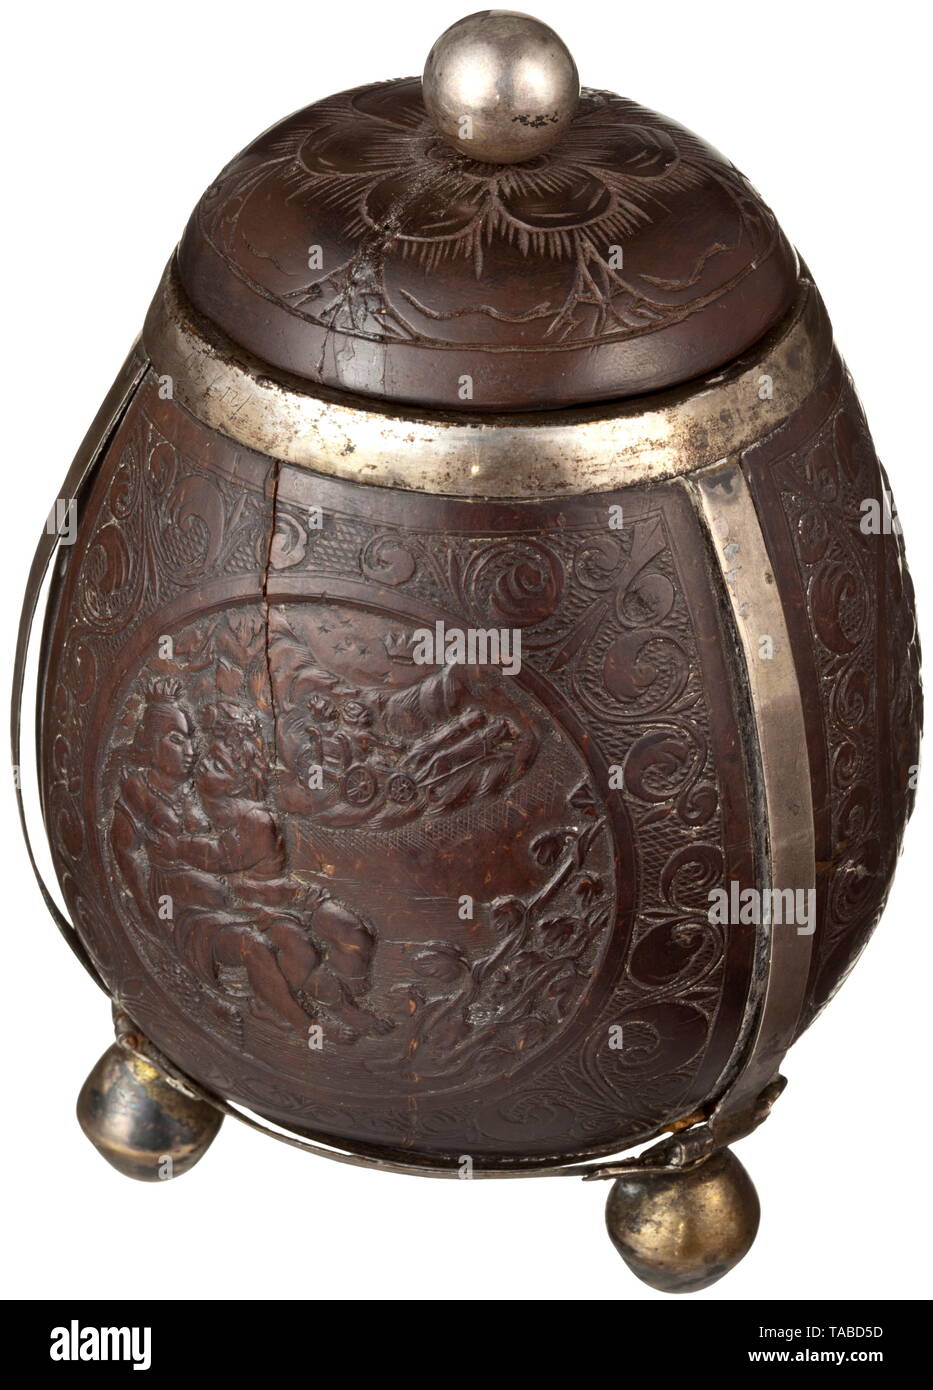 Une boîte de noix de coco ou flamand allemand du 17ème siècle, le corps avec couvercle à capuchon sculpté de noix de coco, de l'argent monté avec trois pieds boule et avec un décor sculpté en relief. Un côté porte un écusson entouré par des vrilles de vigne, tuyaux et accessoires de table. À côté de ce sont deux cartouches, une avec une représentation d'un chérubin que Bacchus à cheval sur un tonneau de vin, l'autre avec angelots amoureux jouer entre vigne vrilles, les cartouches chaque bordée d'un décor de la vrille, la base et le couvercle avec une décoration florale. Le corps porte les petites fissures, l'âge , Additional-Rights Clearance-Info-Not-Available- Banque D'Images